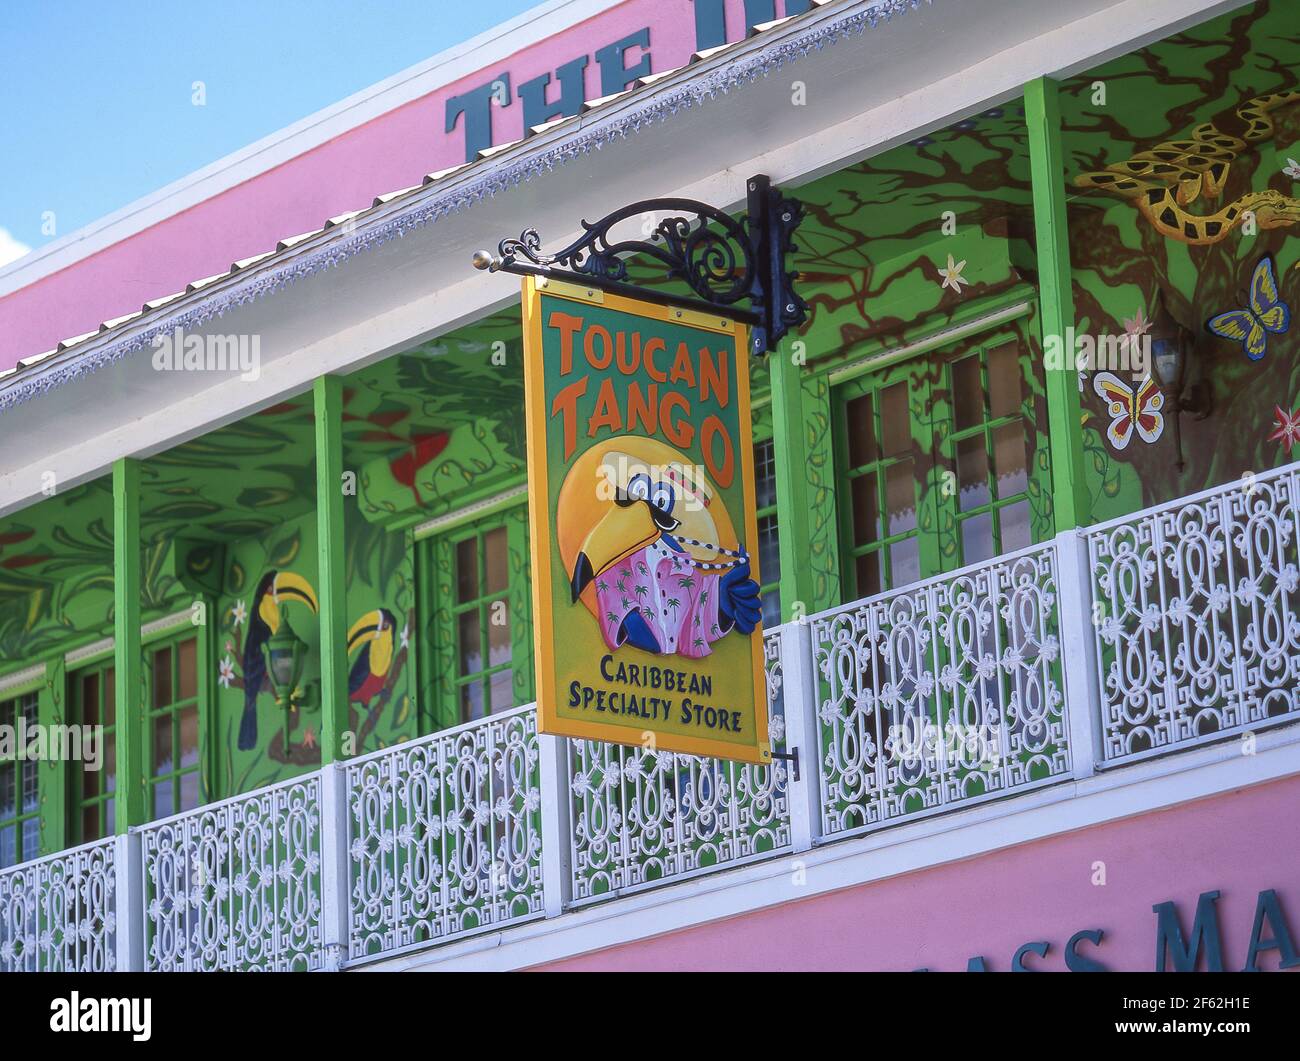 Toucan coloré Tango store se connecter, George Town, Grand Cayman, îles Caïmans, Antilles, Caraïbes Banque D'Images